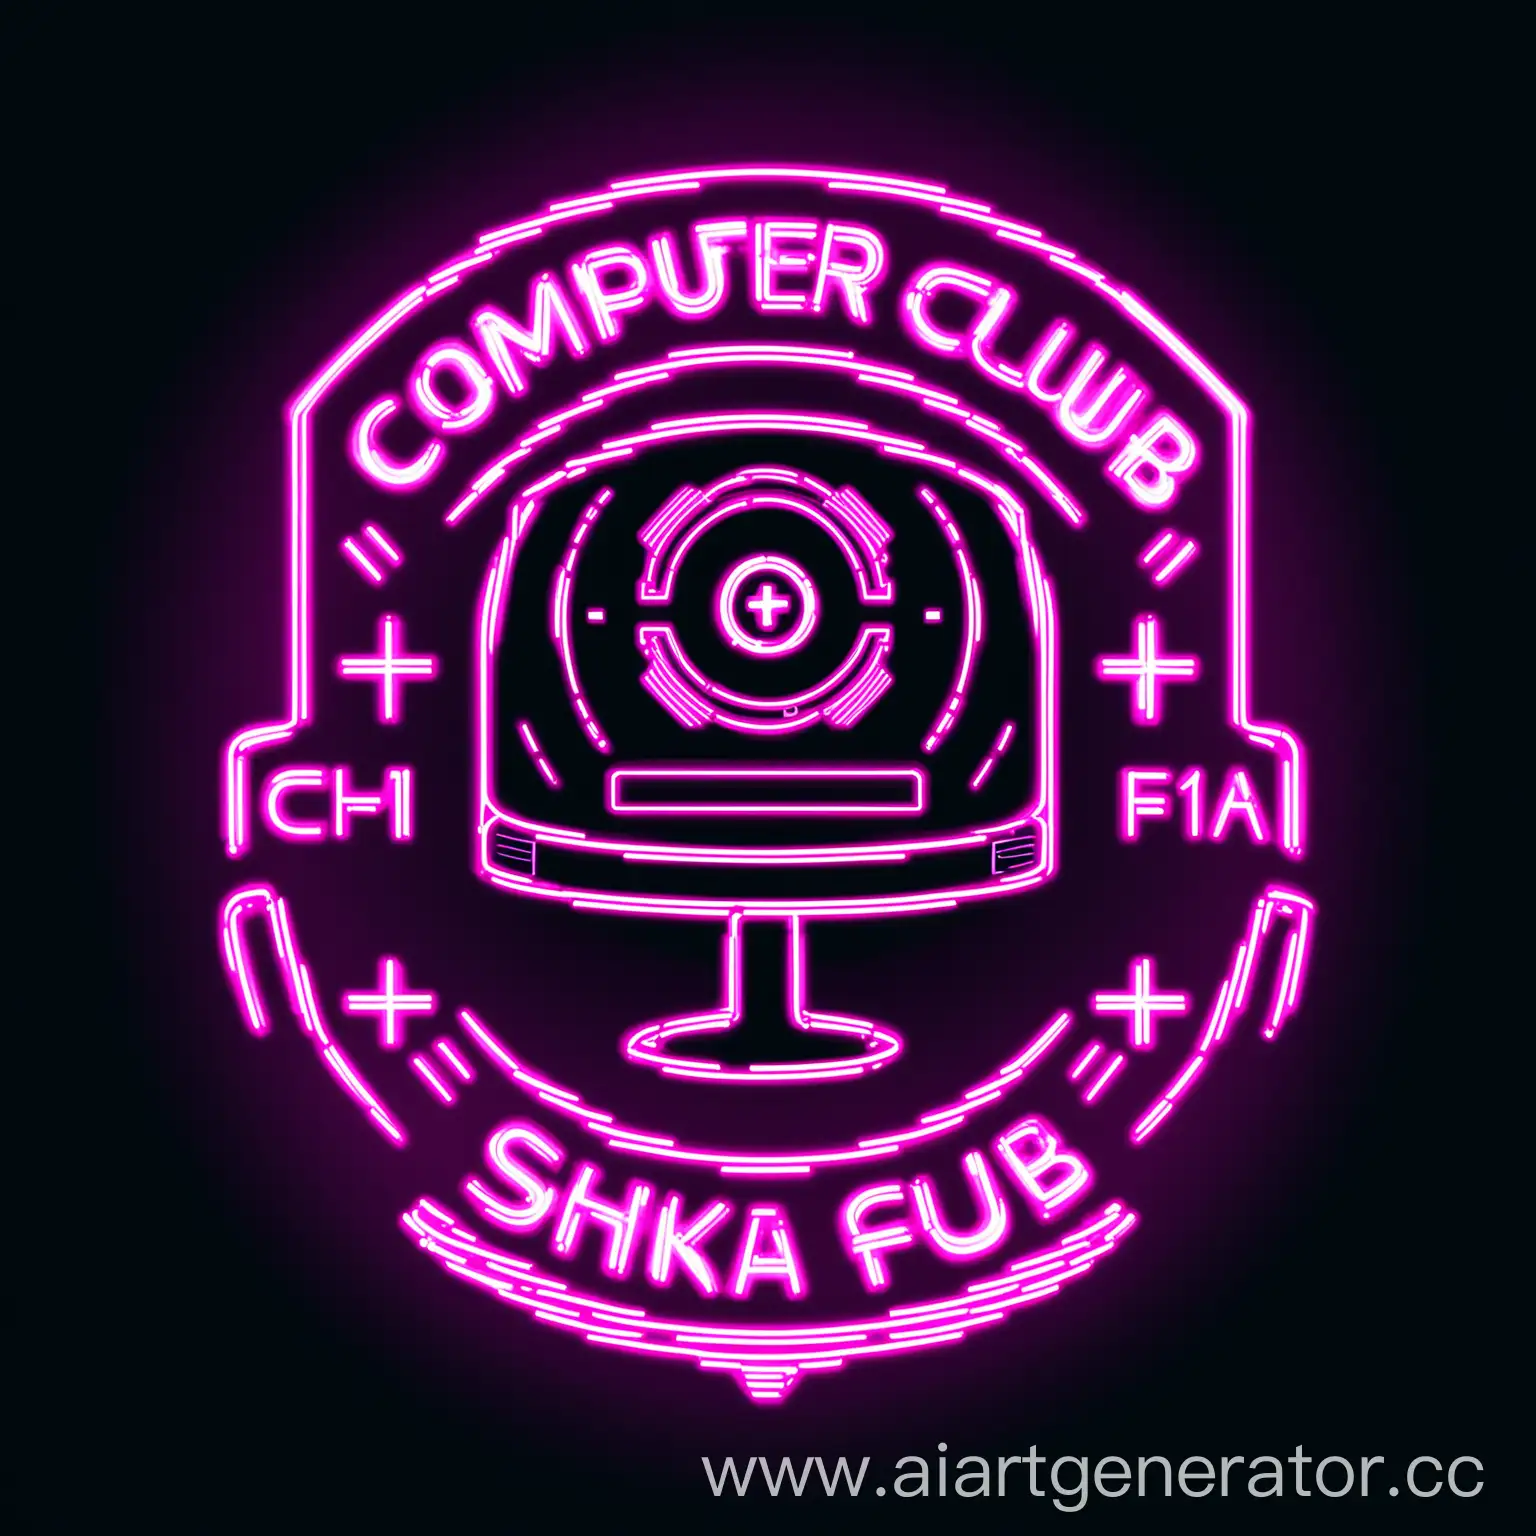 Neon-Computer-Club-Logo-Design-F1SHKA-with-Futuristic-Text